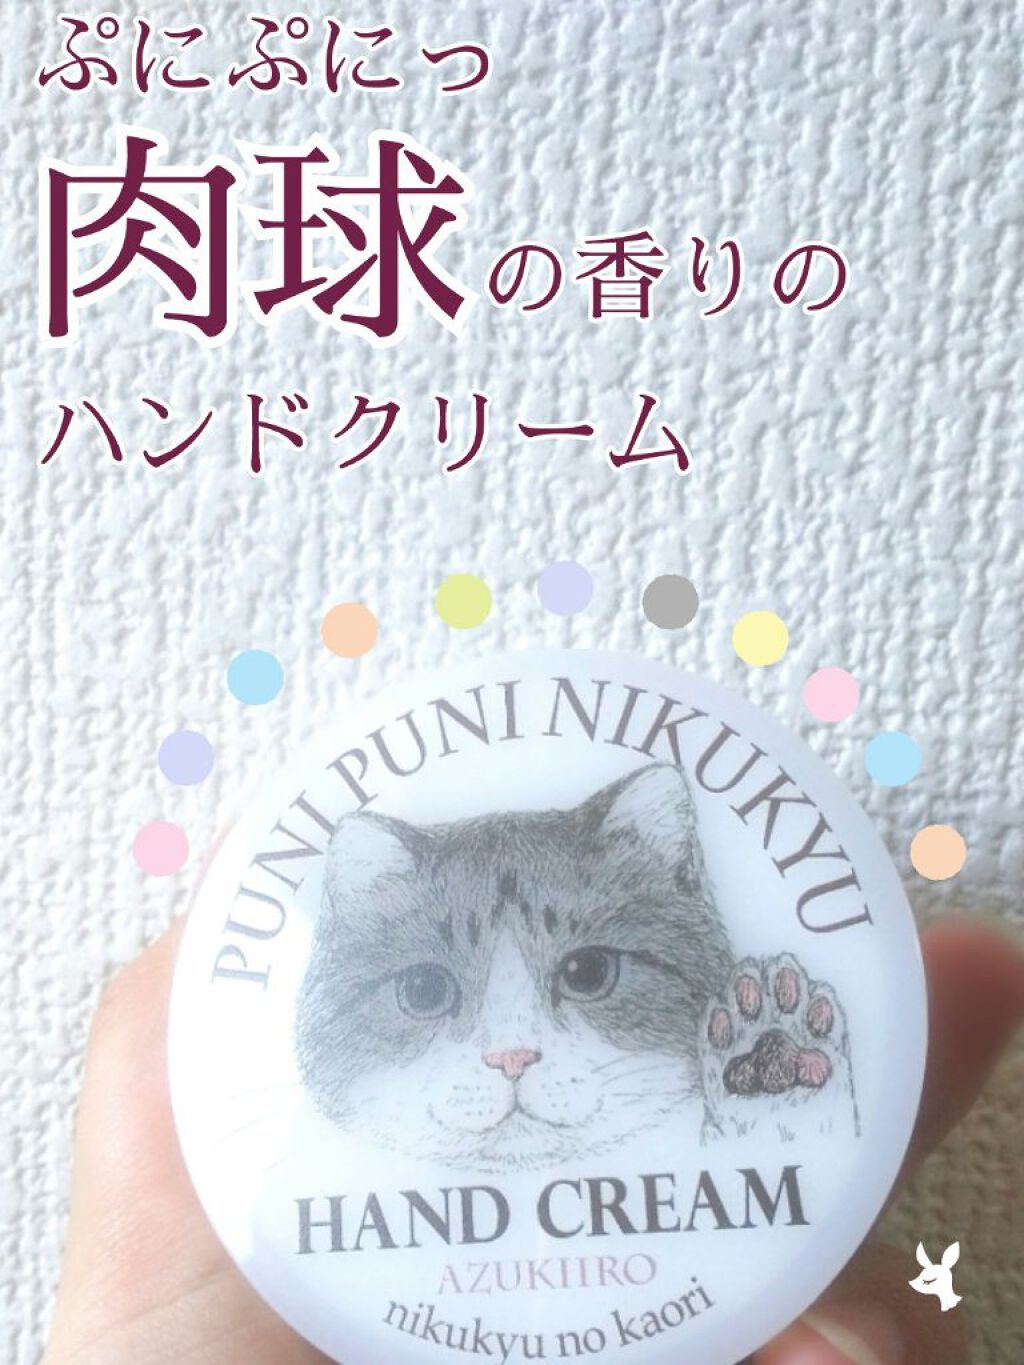 試してみた】NIKUKYU NO KAORI ハンドクリーム （あの猫(こ)とおそろい!?プニプニ肉球の香りハンドクリーム）／フェリシモ | LIPS